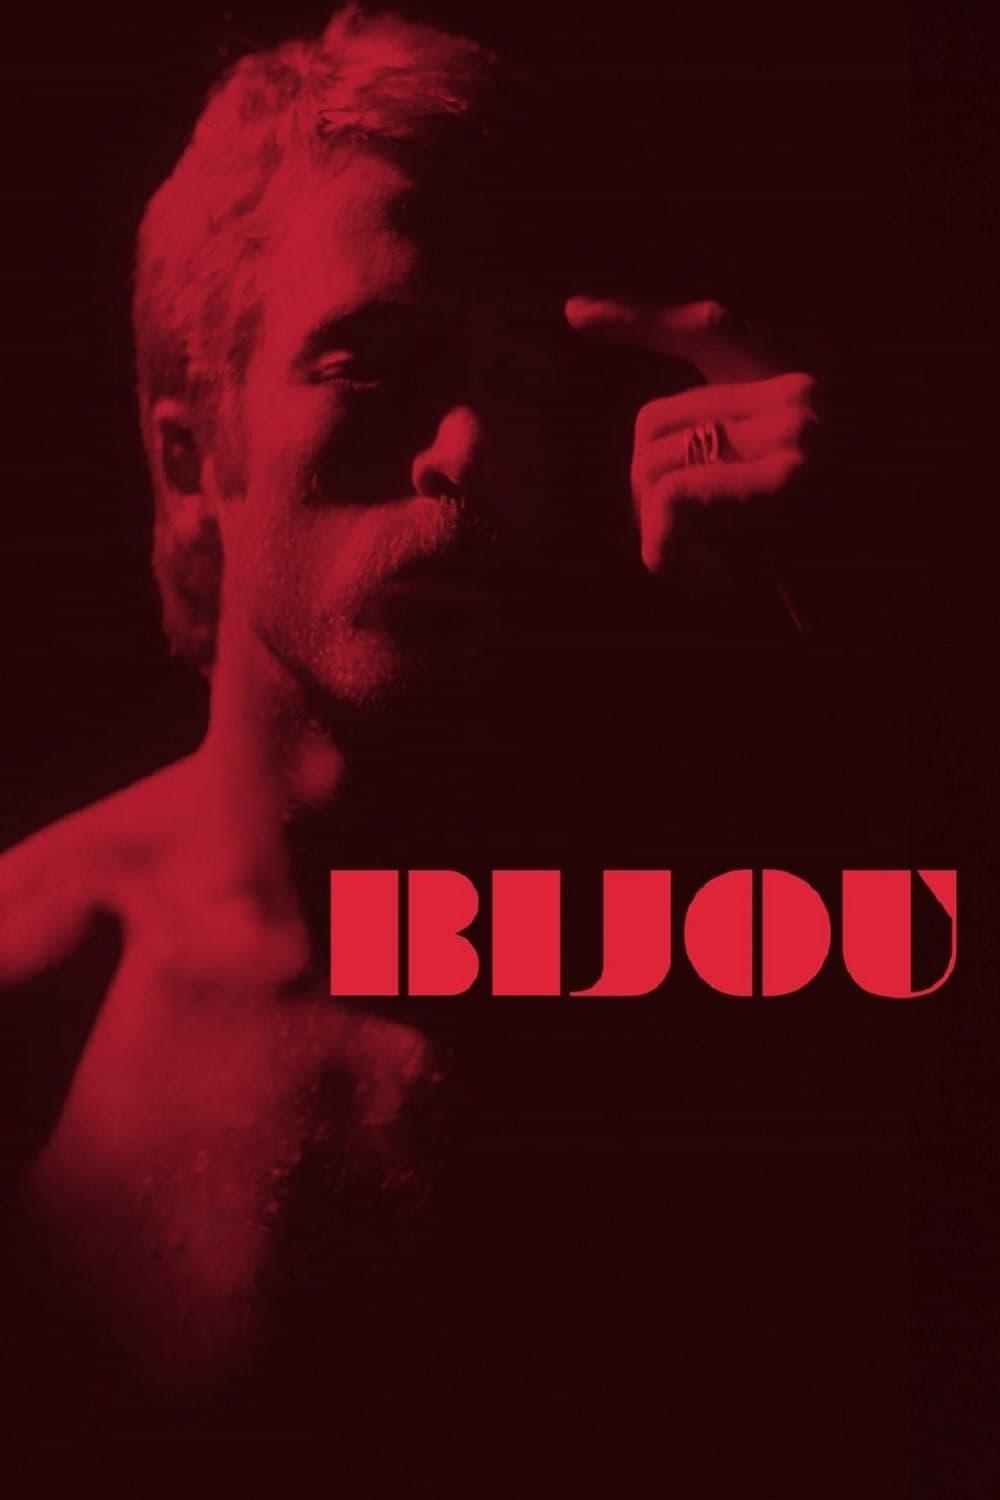 Bijou poster